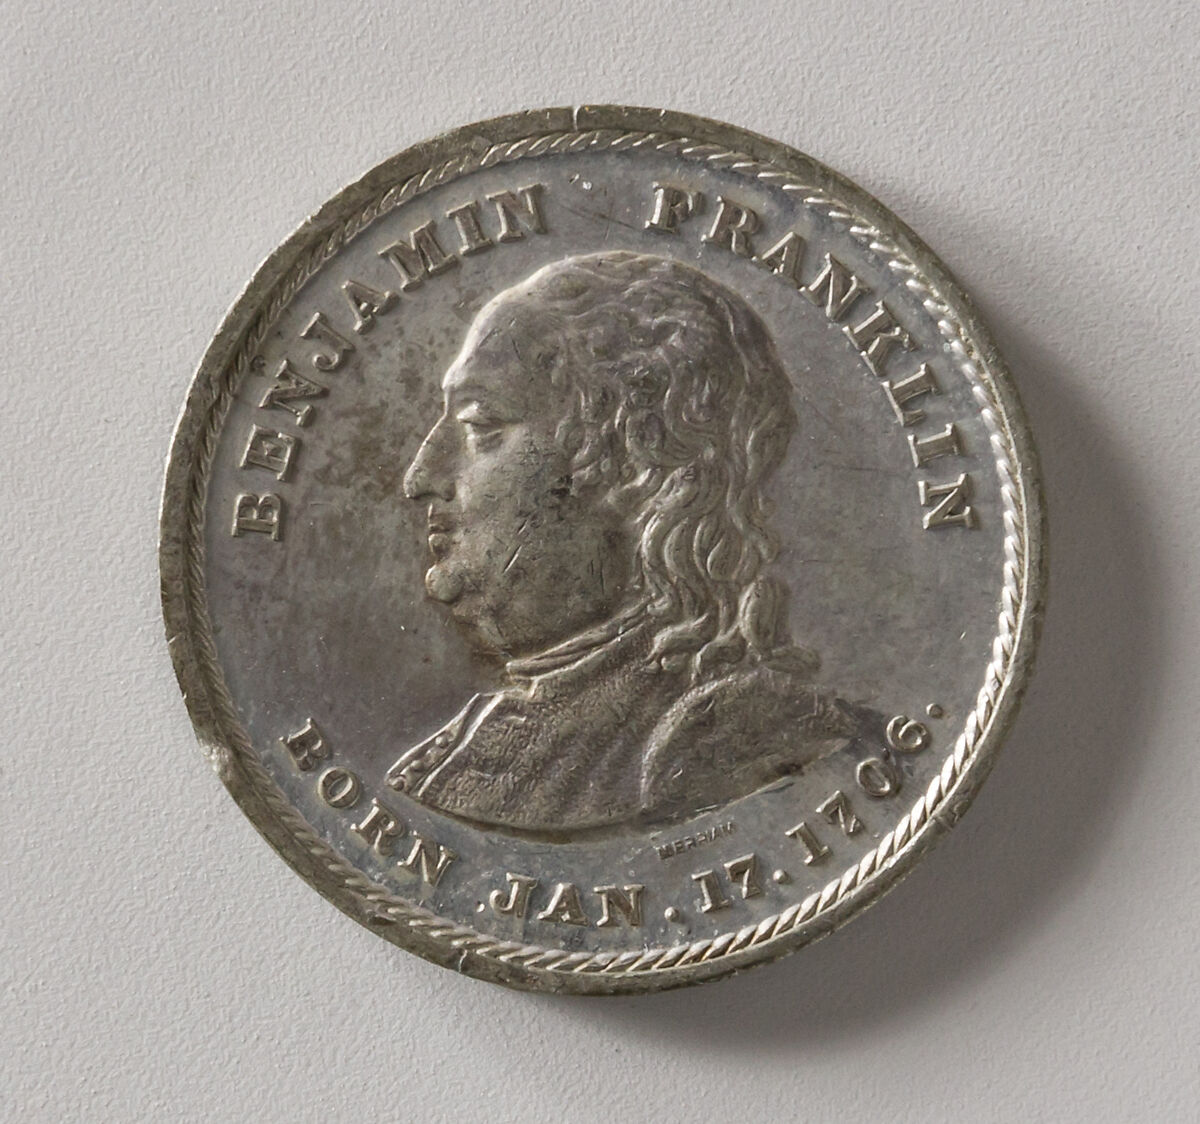 Benjamin Franklin, Joseph H. Merriam, White metal, American 